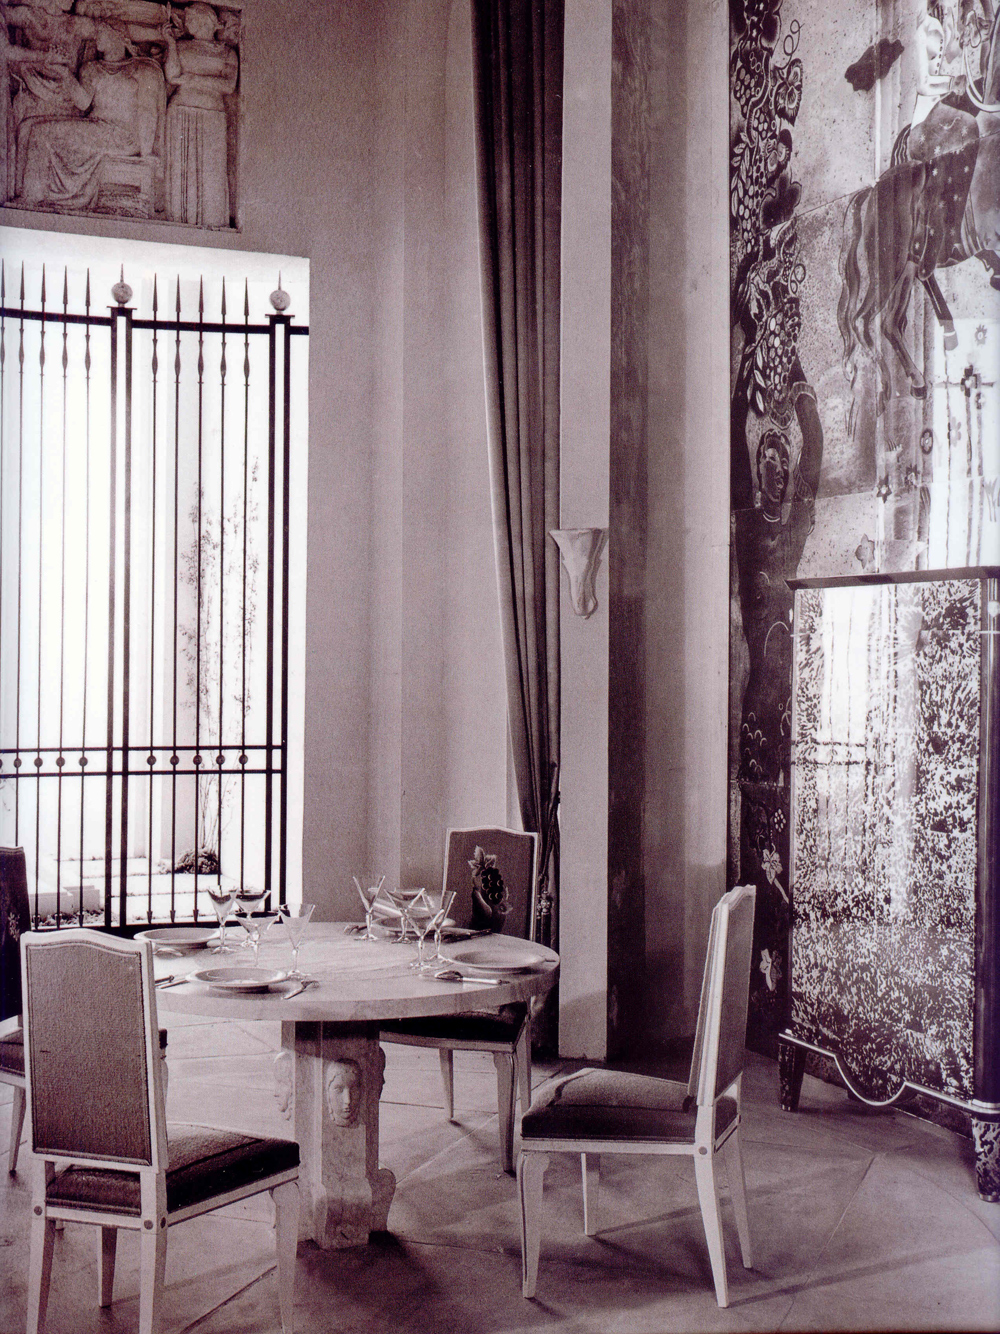 Андре Арбюс, столовая дома в Иль-де-Франс. Экспонировалась в павильоне «Общества художников-декораторов» на Всемирной выставке в Париже в 1937 году.